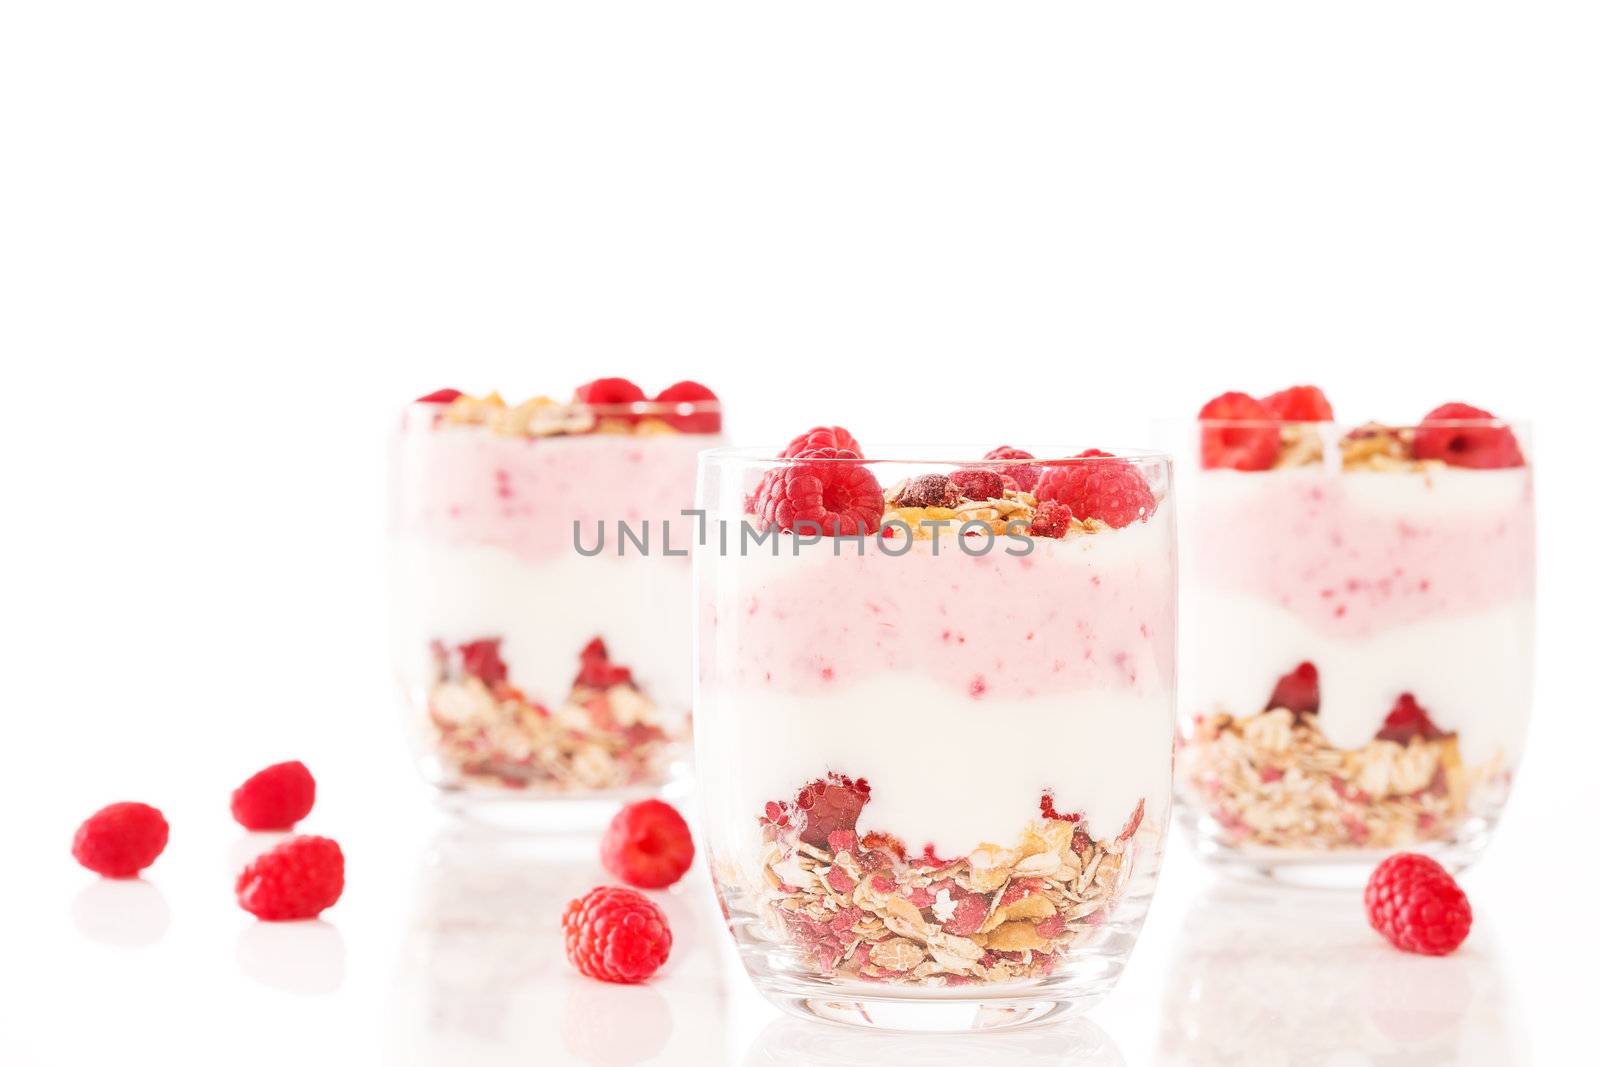 muesli yoghurt dessert wih raspberries by RobStark